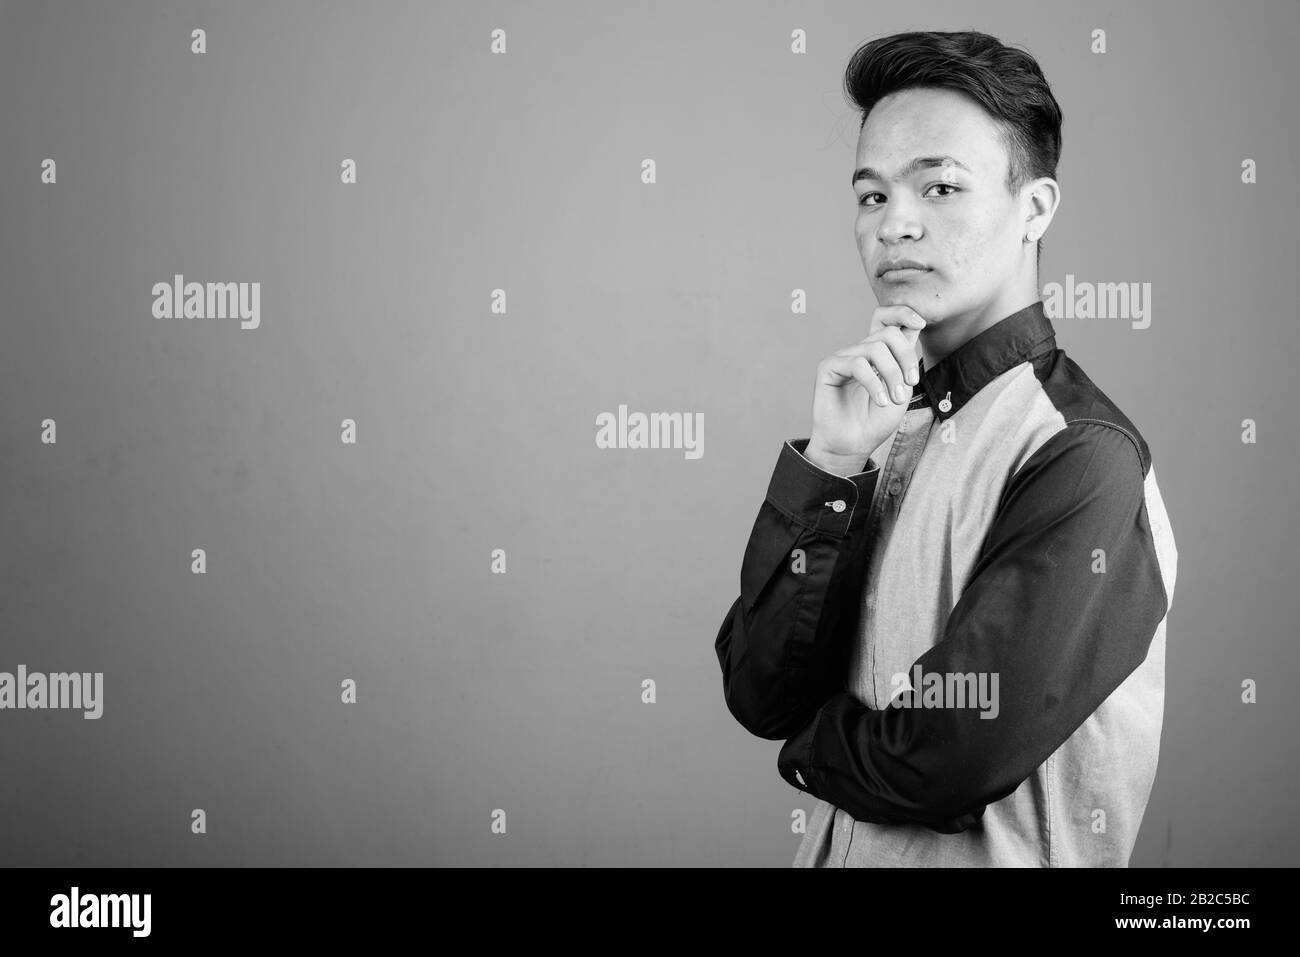 Portrait des jungen gutaussehenden asiatischen Teenagers, der intelligent aussieht Stockfoto